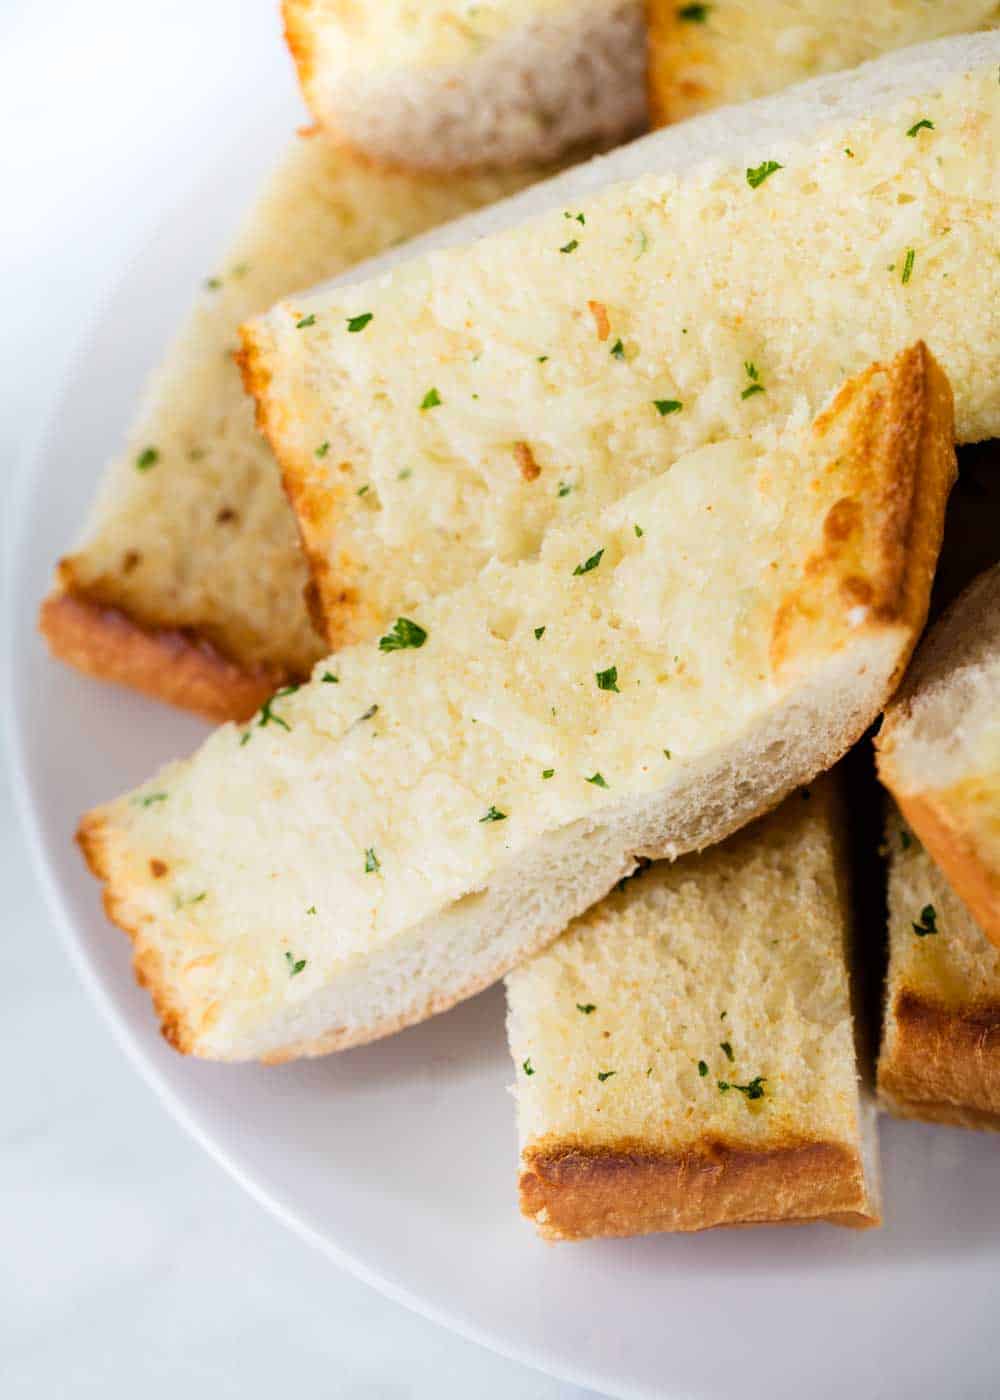 https://www.iheartnaptime.net/wp-content/uploads/2019/02/garlic-bread.jpg